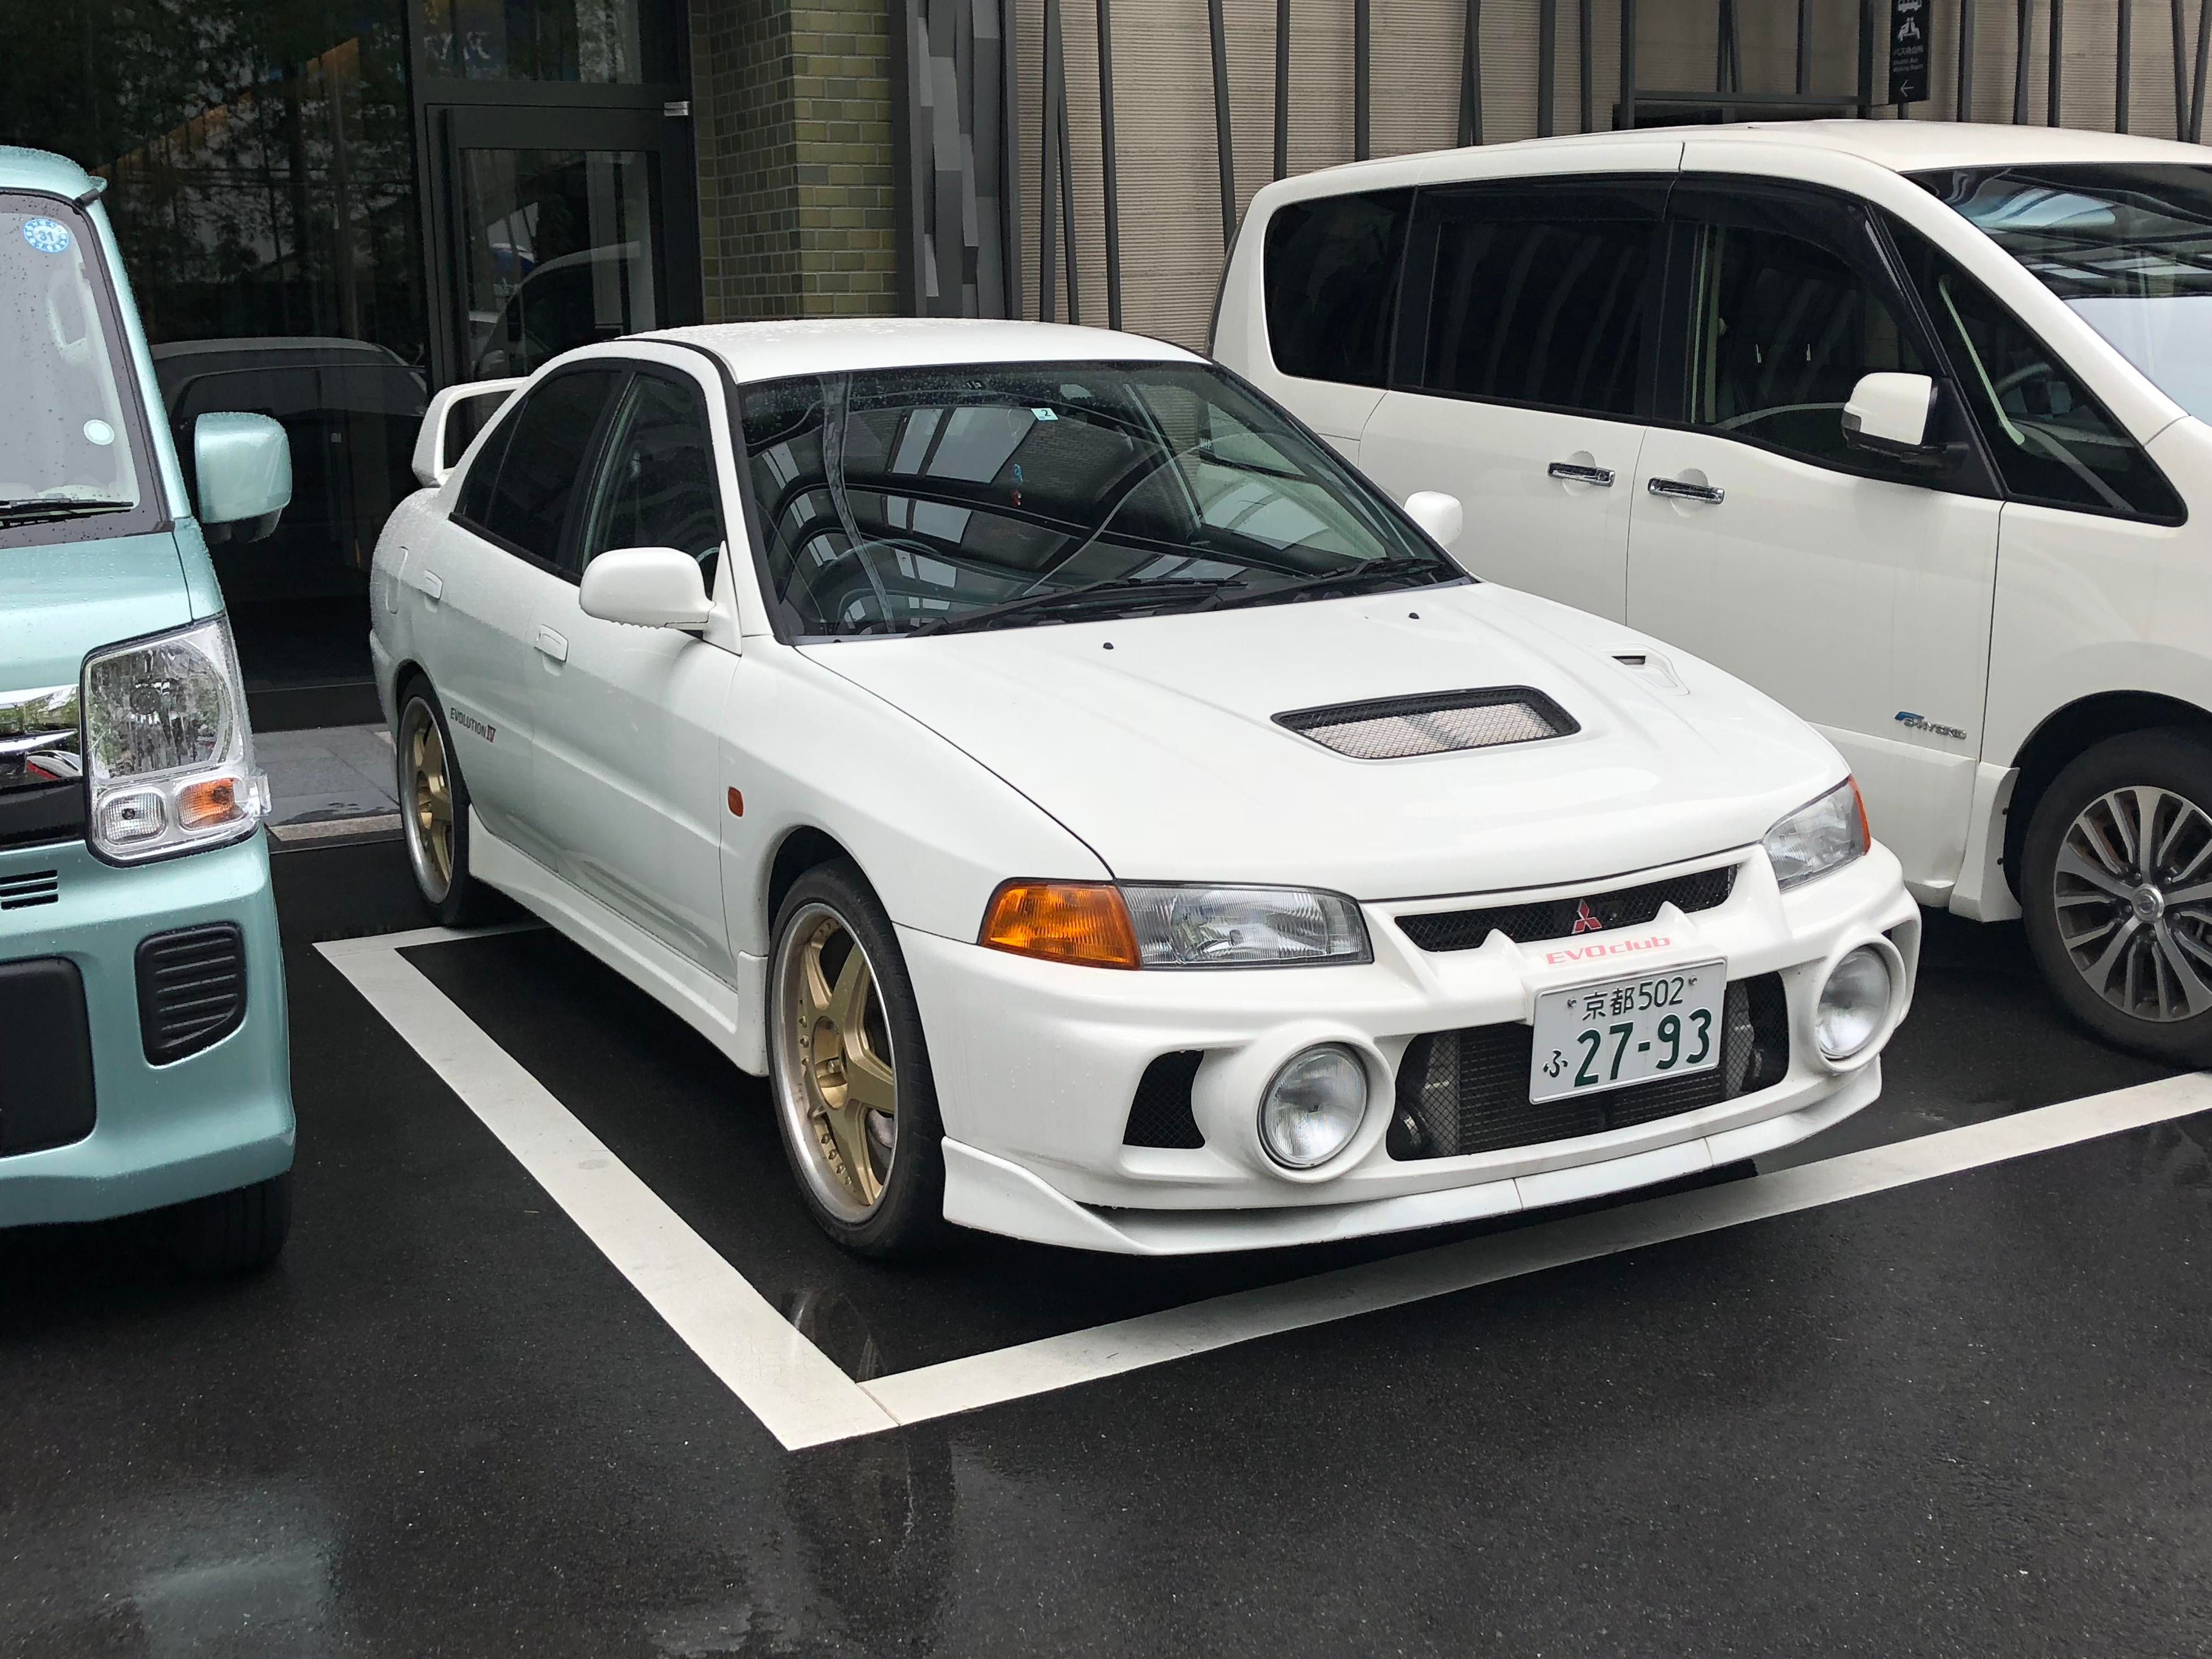 White Mitsubishi Evolution IV